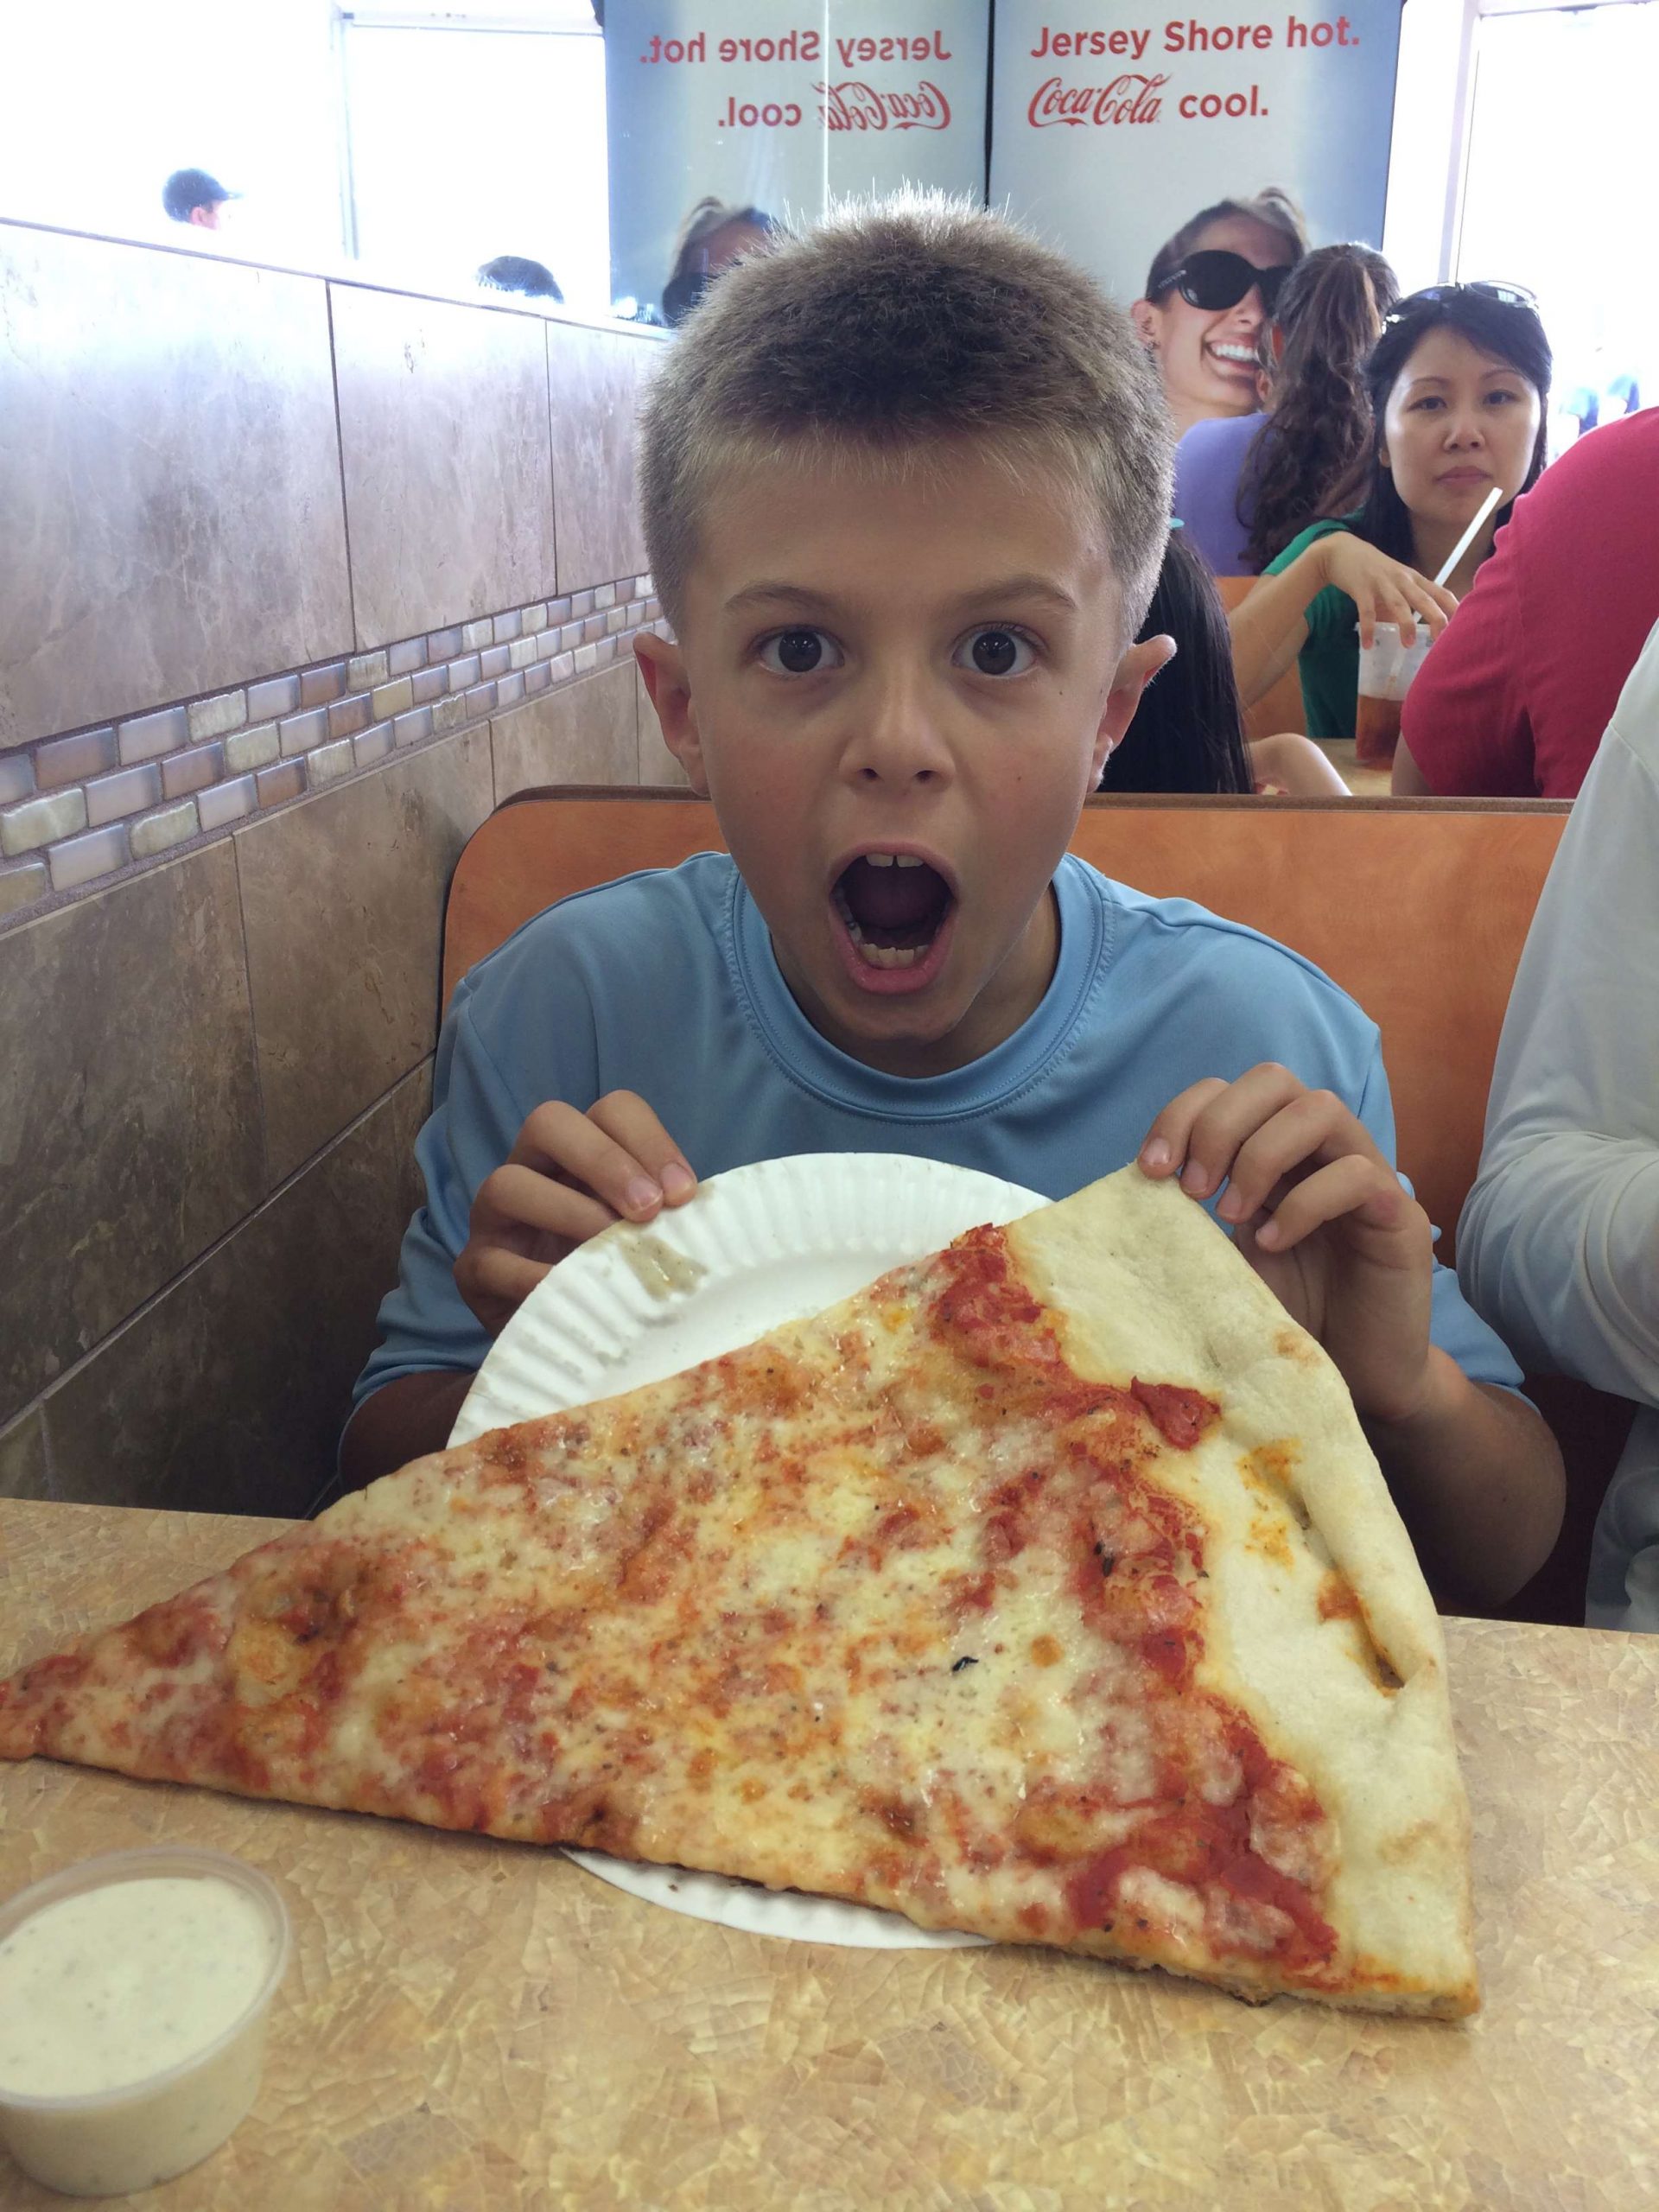 Boardwalk pizza!